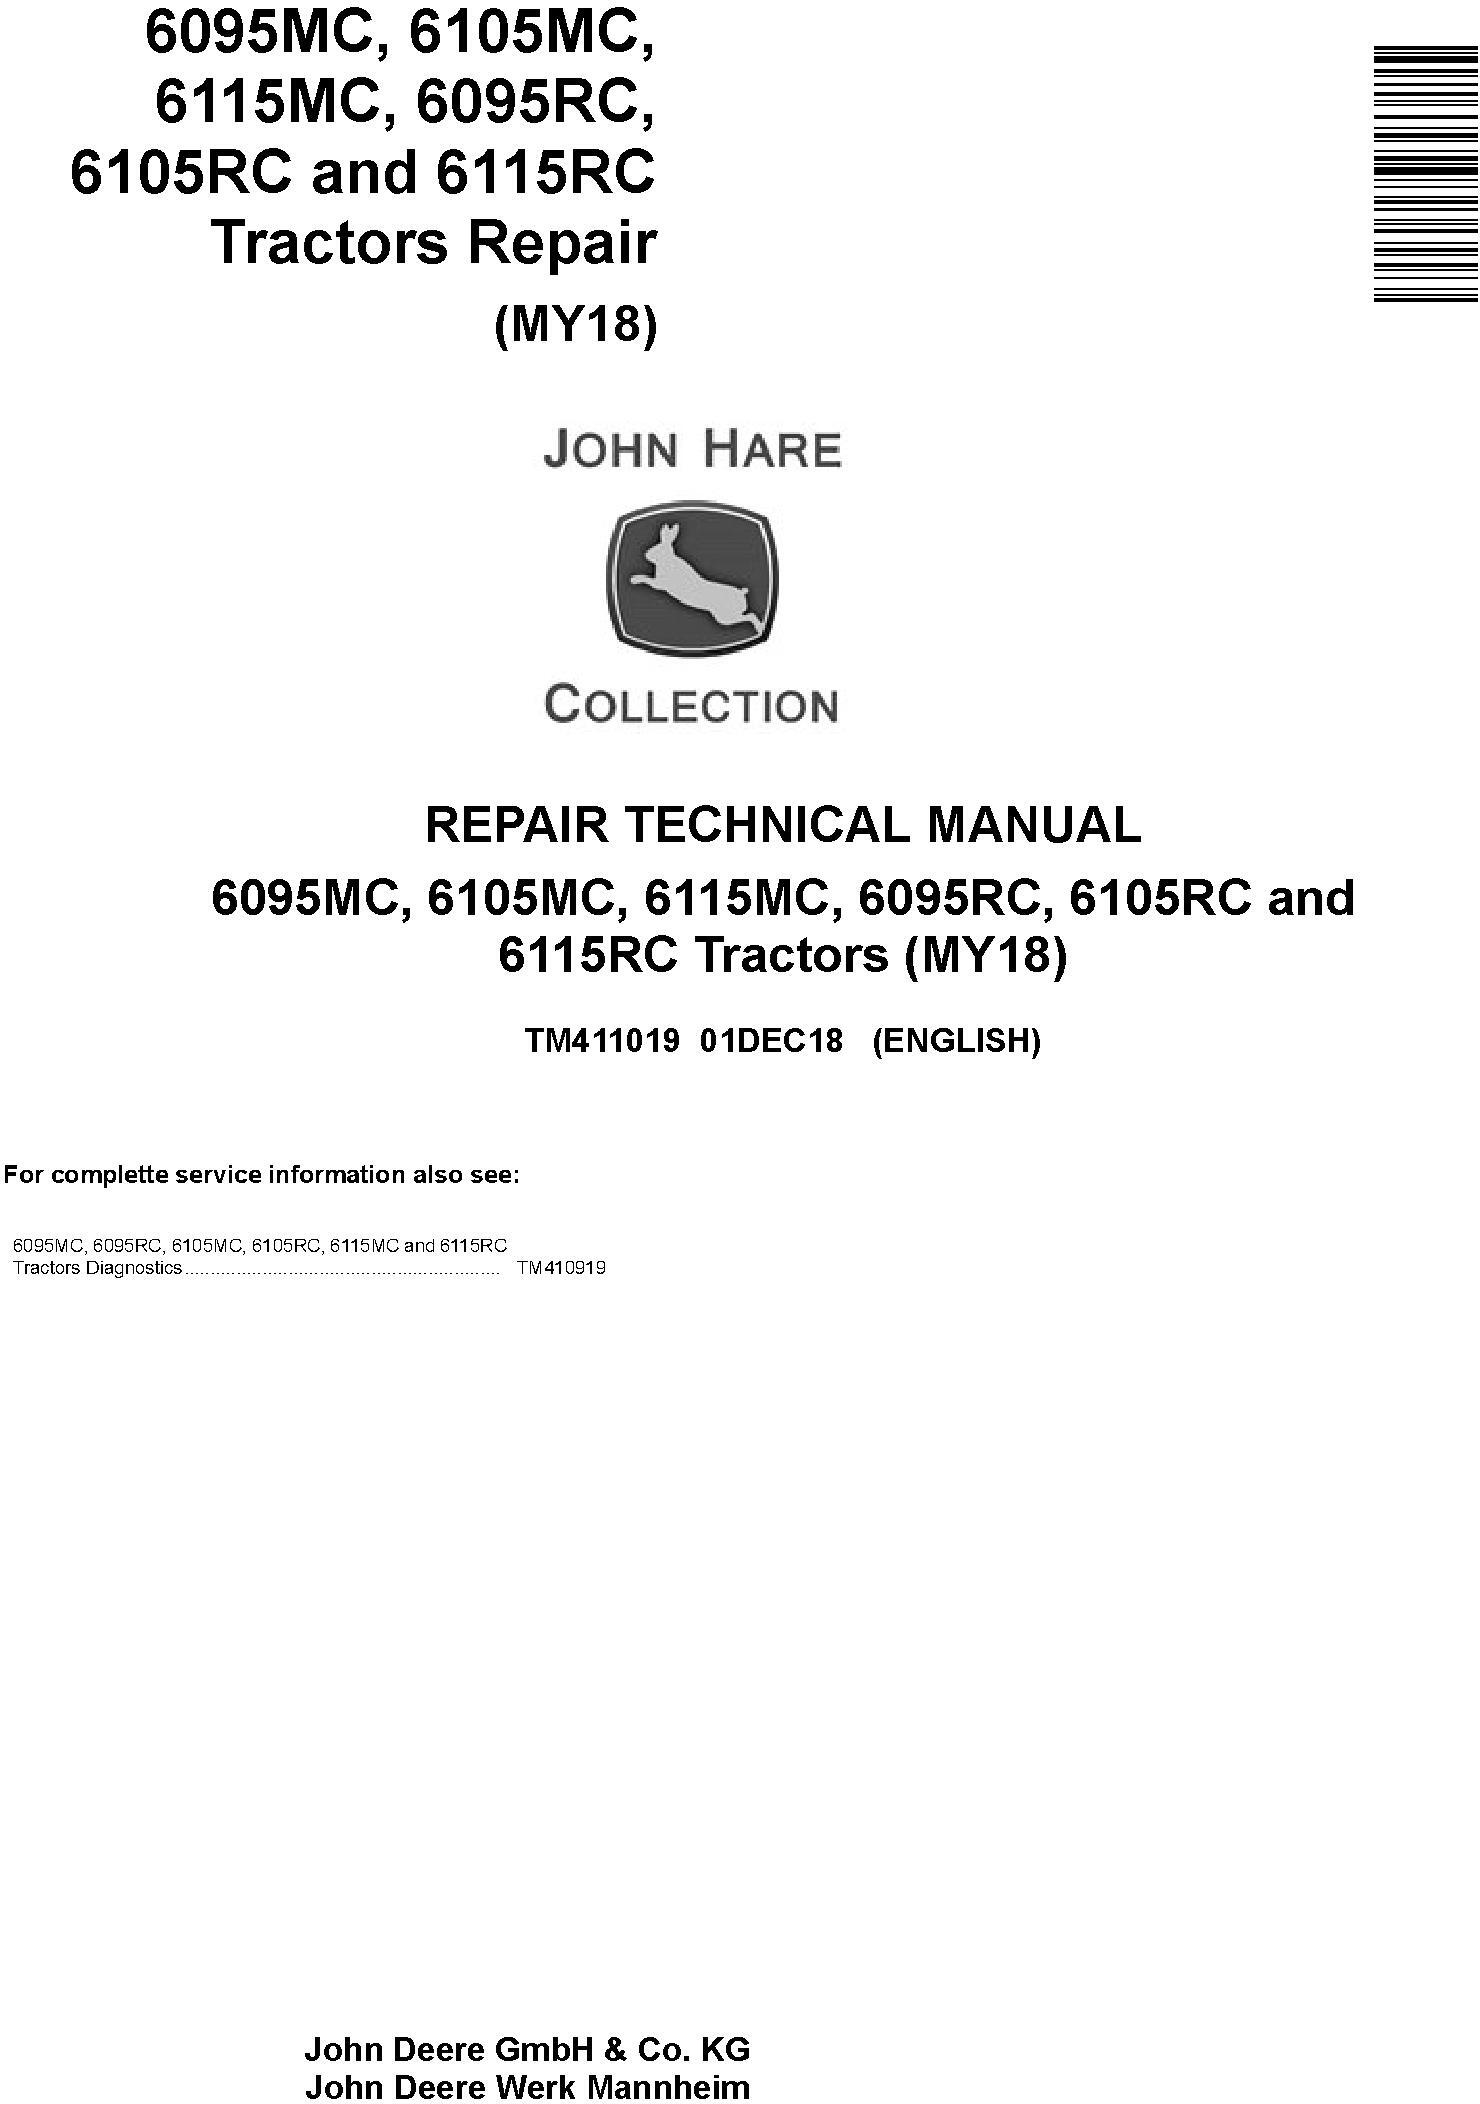 John Deere 6095MC to 6115RC Tractor Repair Technical Manual TM411019